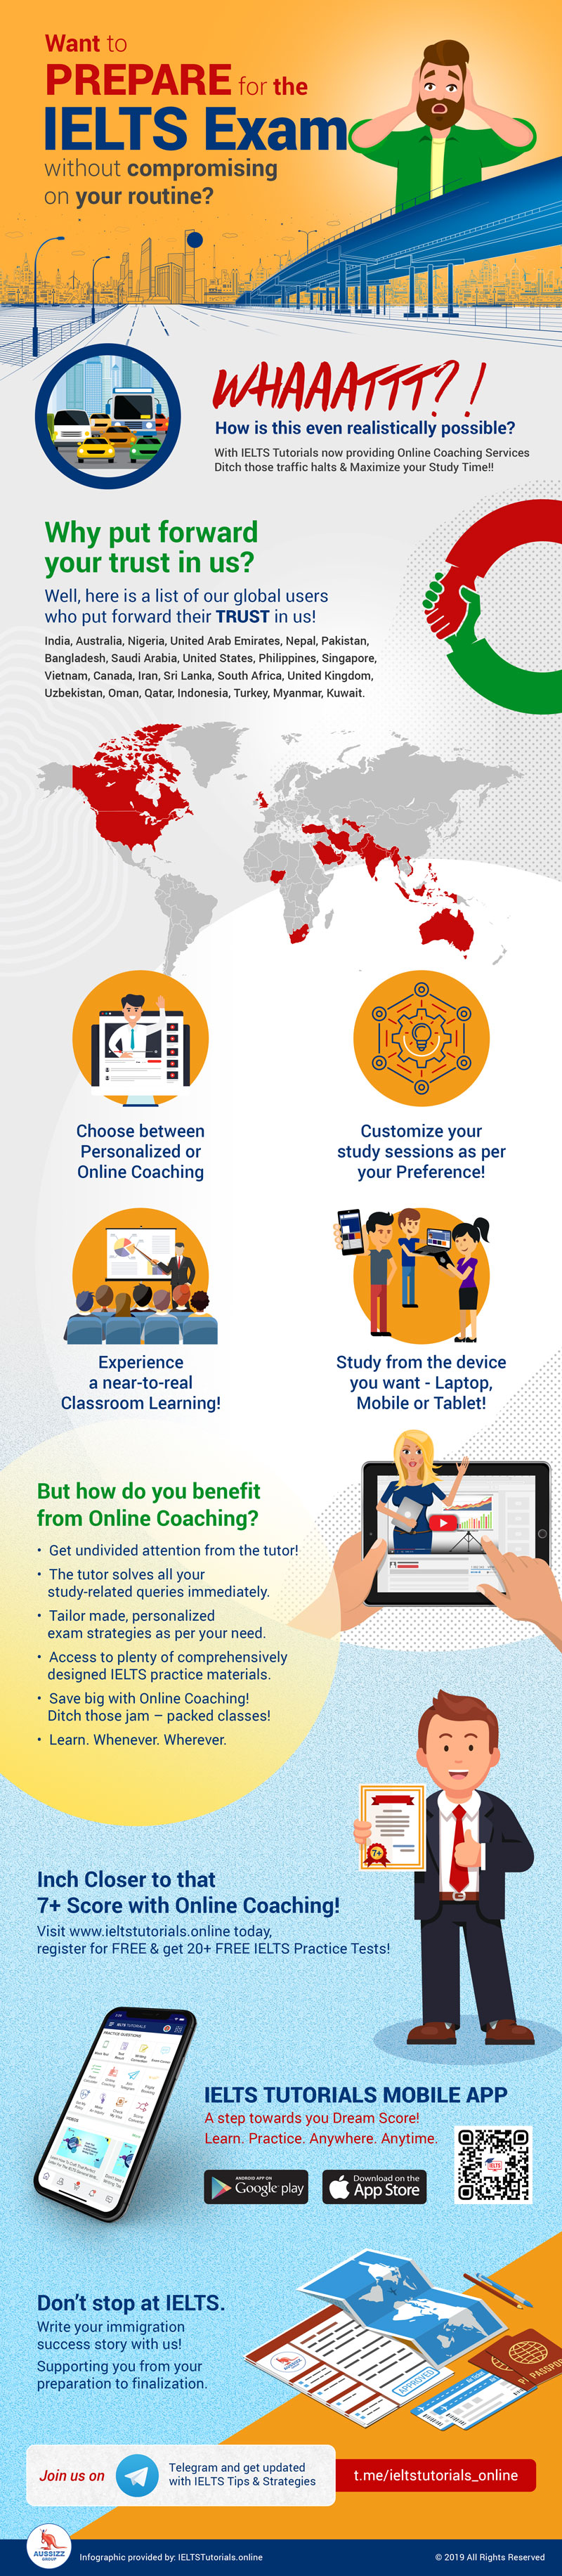 IELTS Online Coaching | Your IELTS Preparation Partner